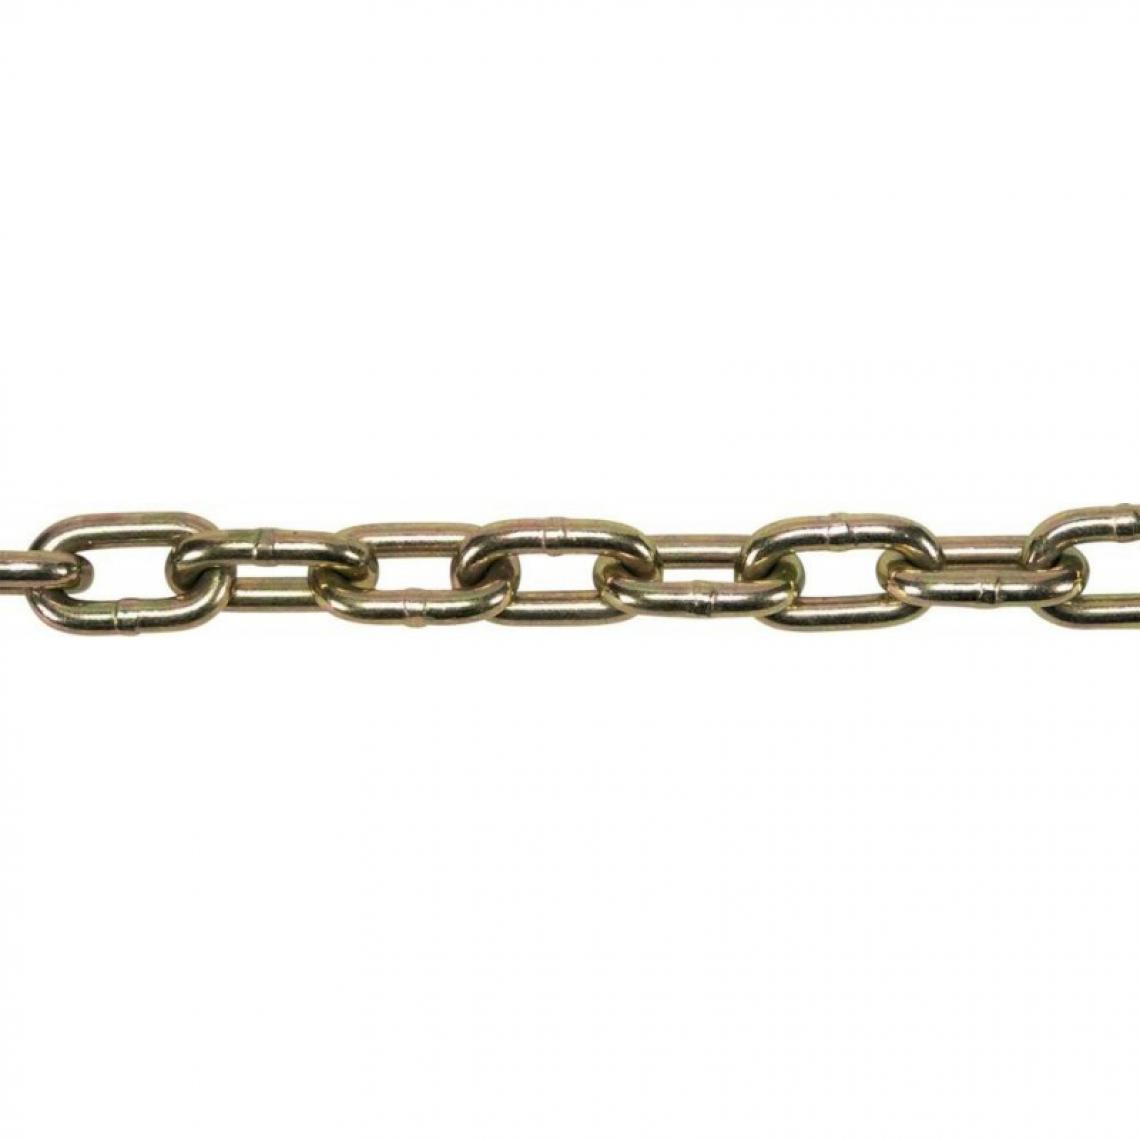 marque generique - Chaine DIN766 zingué jaune A 6,0 - 30m - Corde et sangle